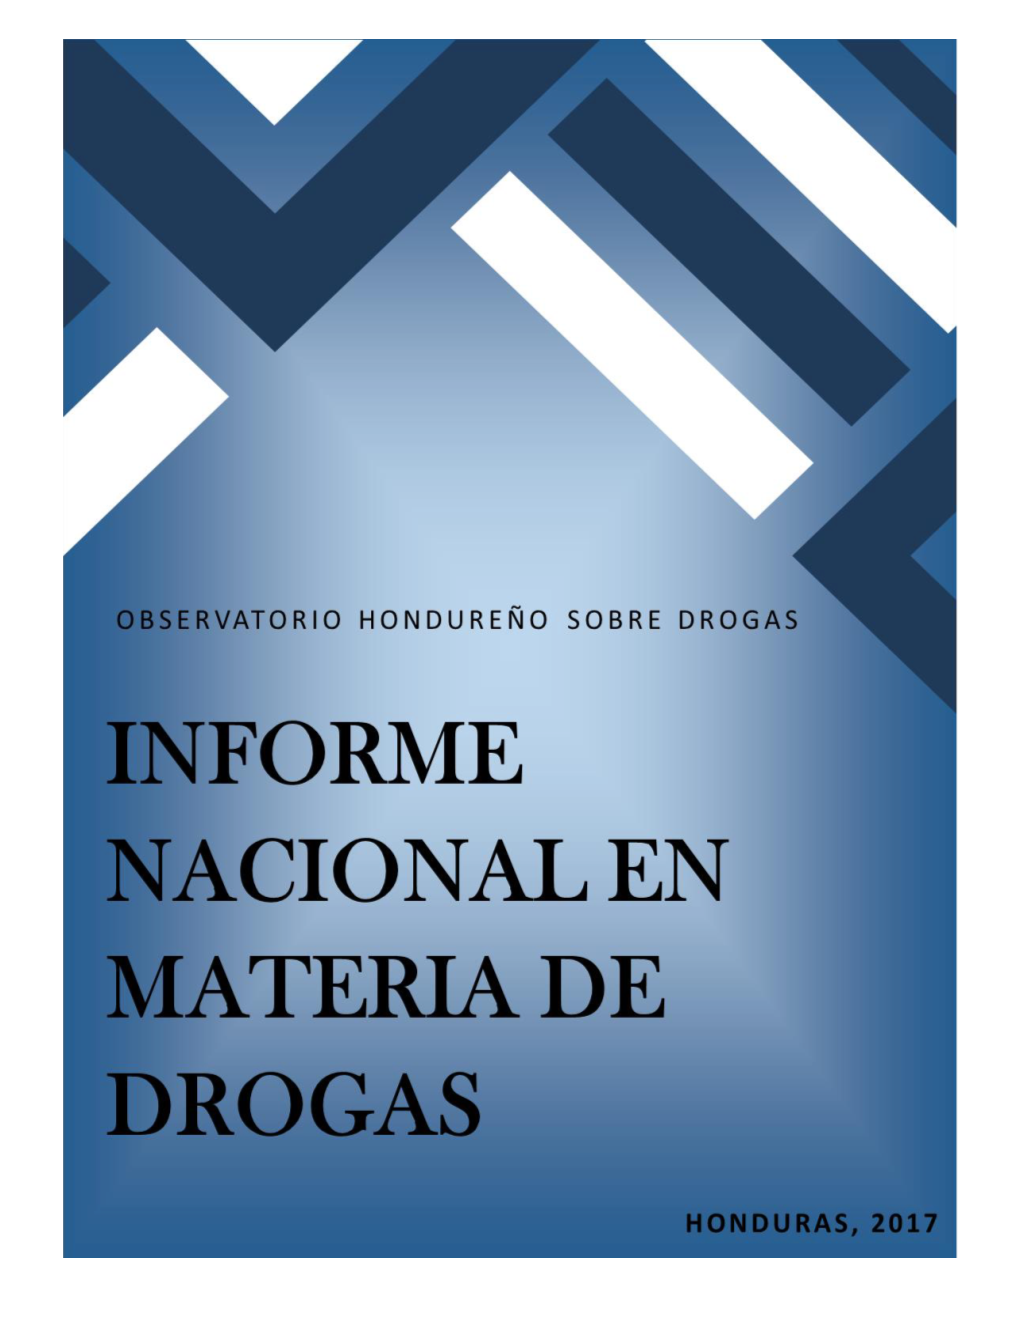 Informe Nacional En Materia De Drogas, Honduras 2017